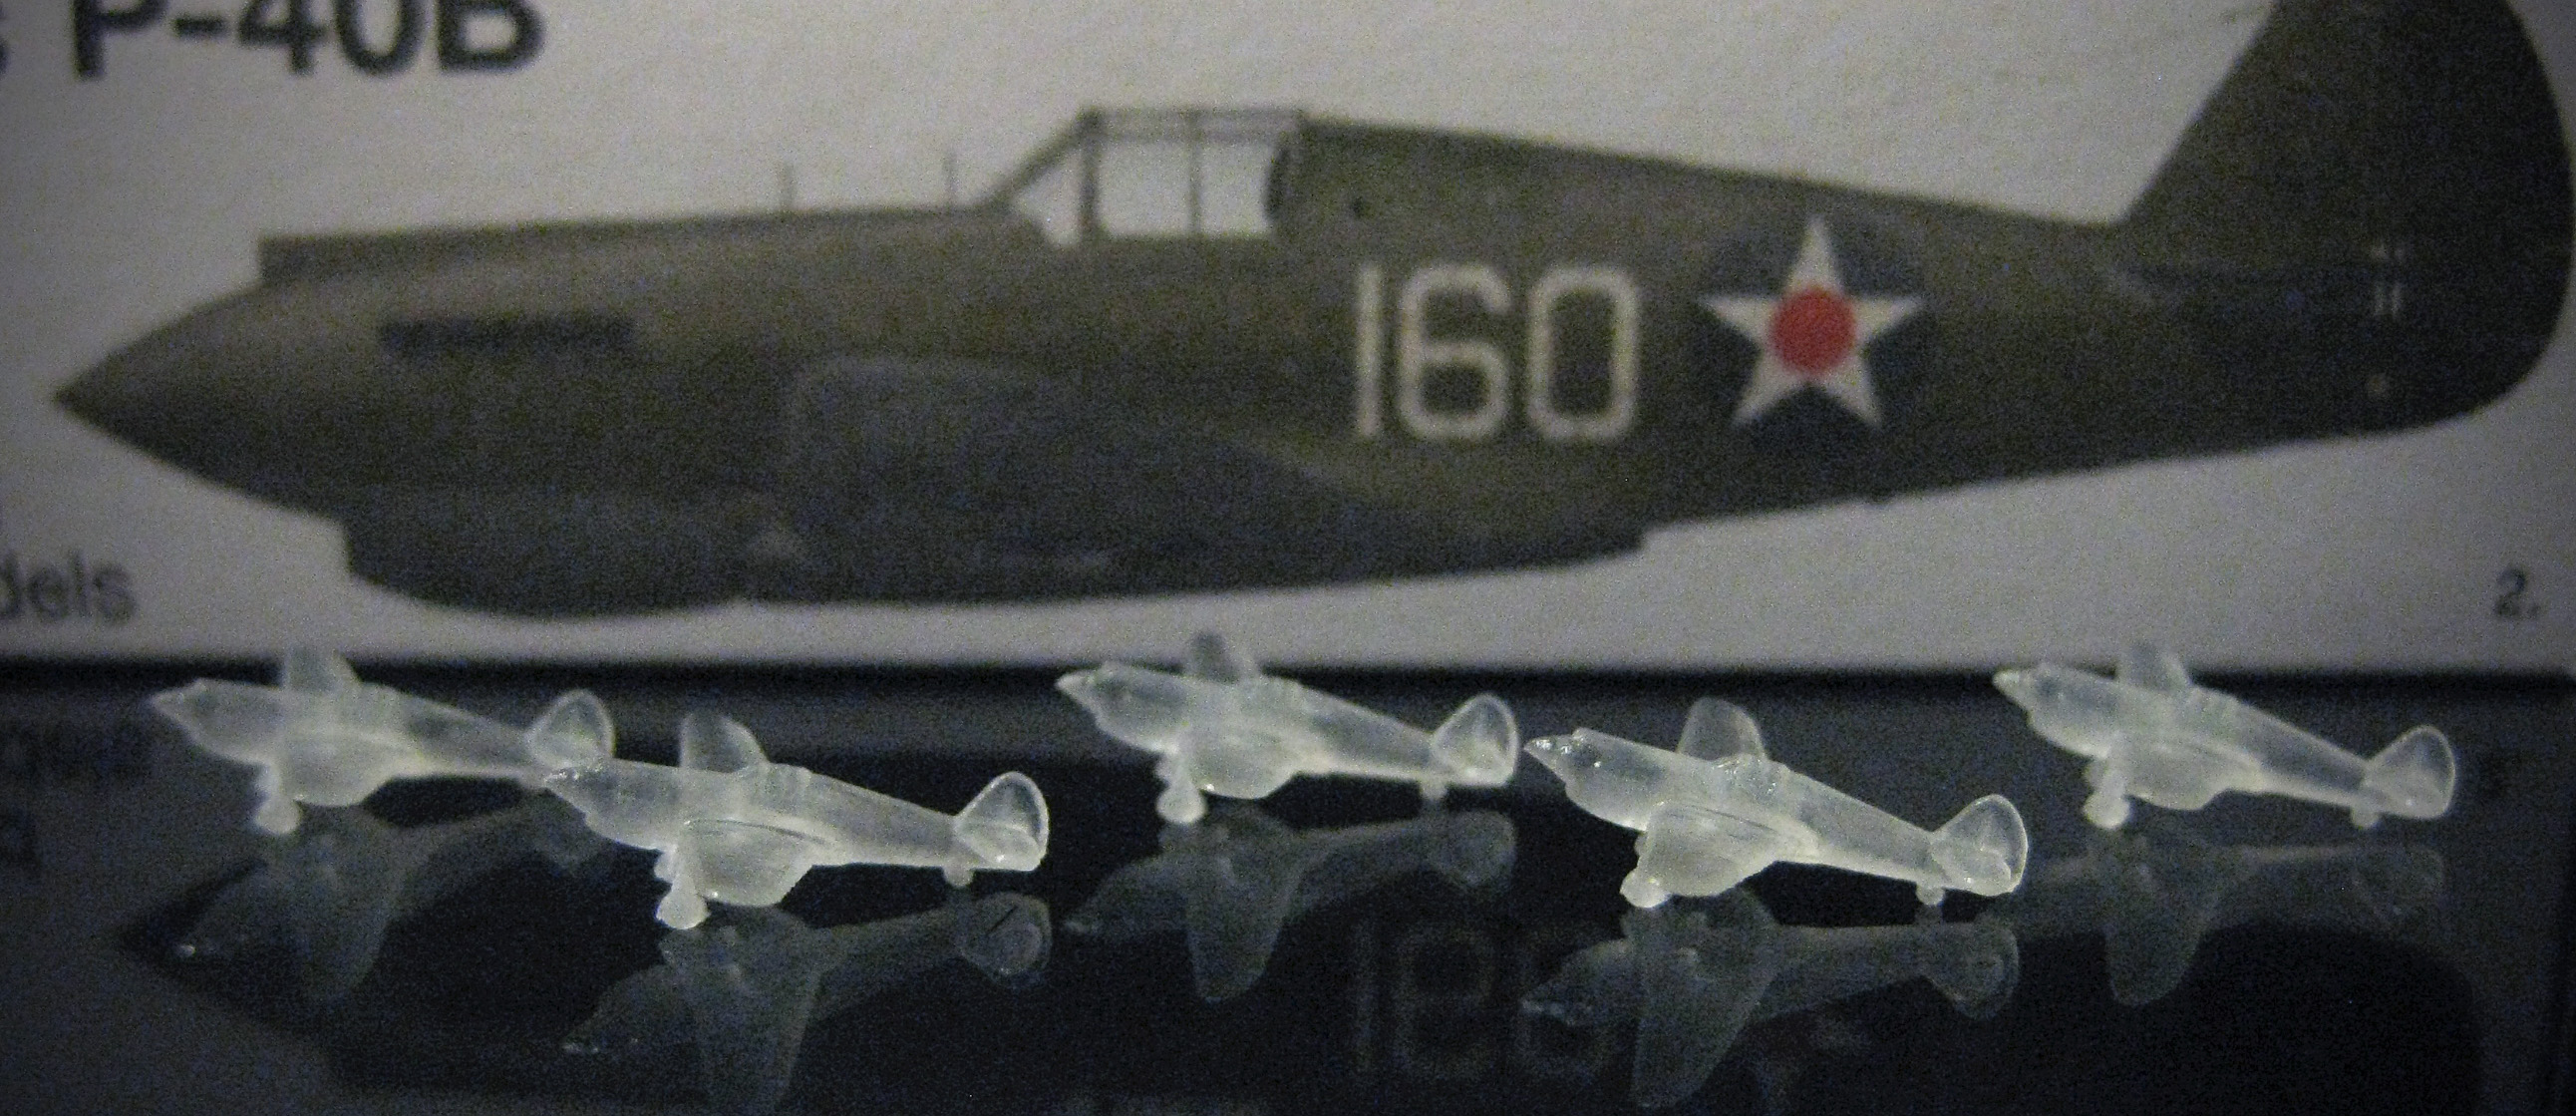 1/700 Curtiss P-40B Warhawk w/gear down (x5)